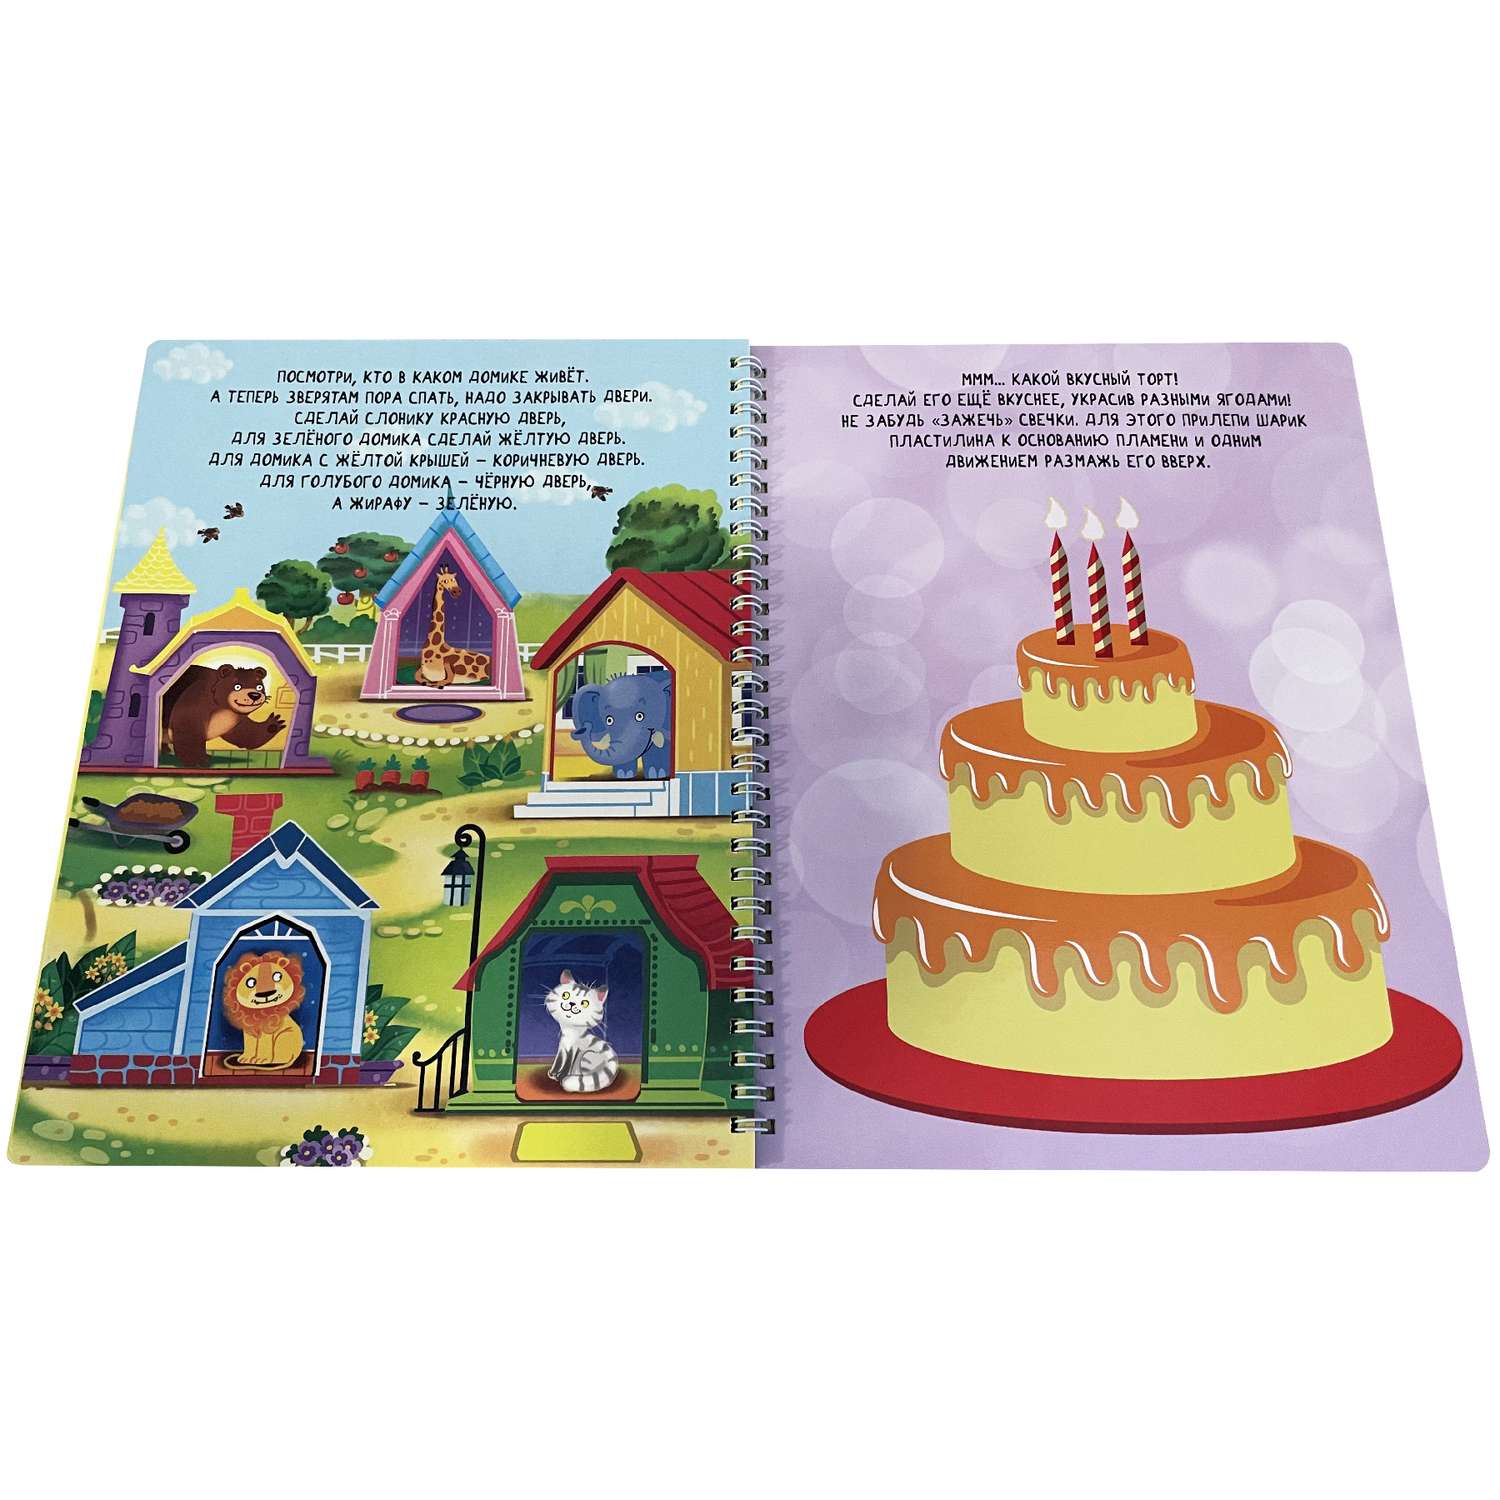 Книга BimBiMon Многоразовые тетради Пиши-Стирай для детей 4-5 лет и Играем с пластилином - фото 9